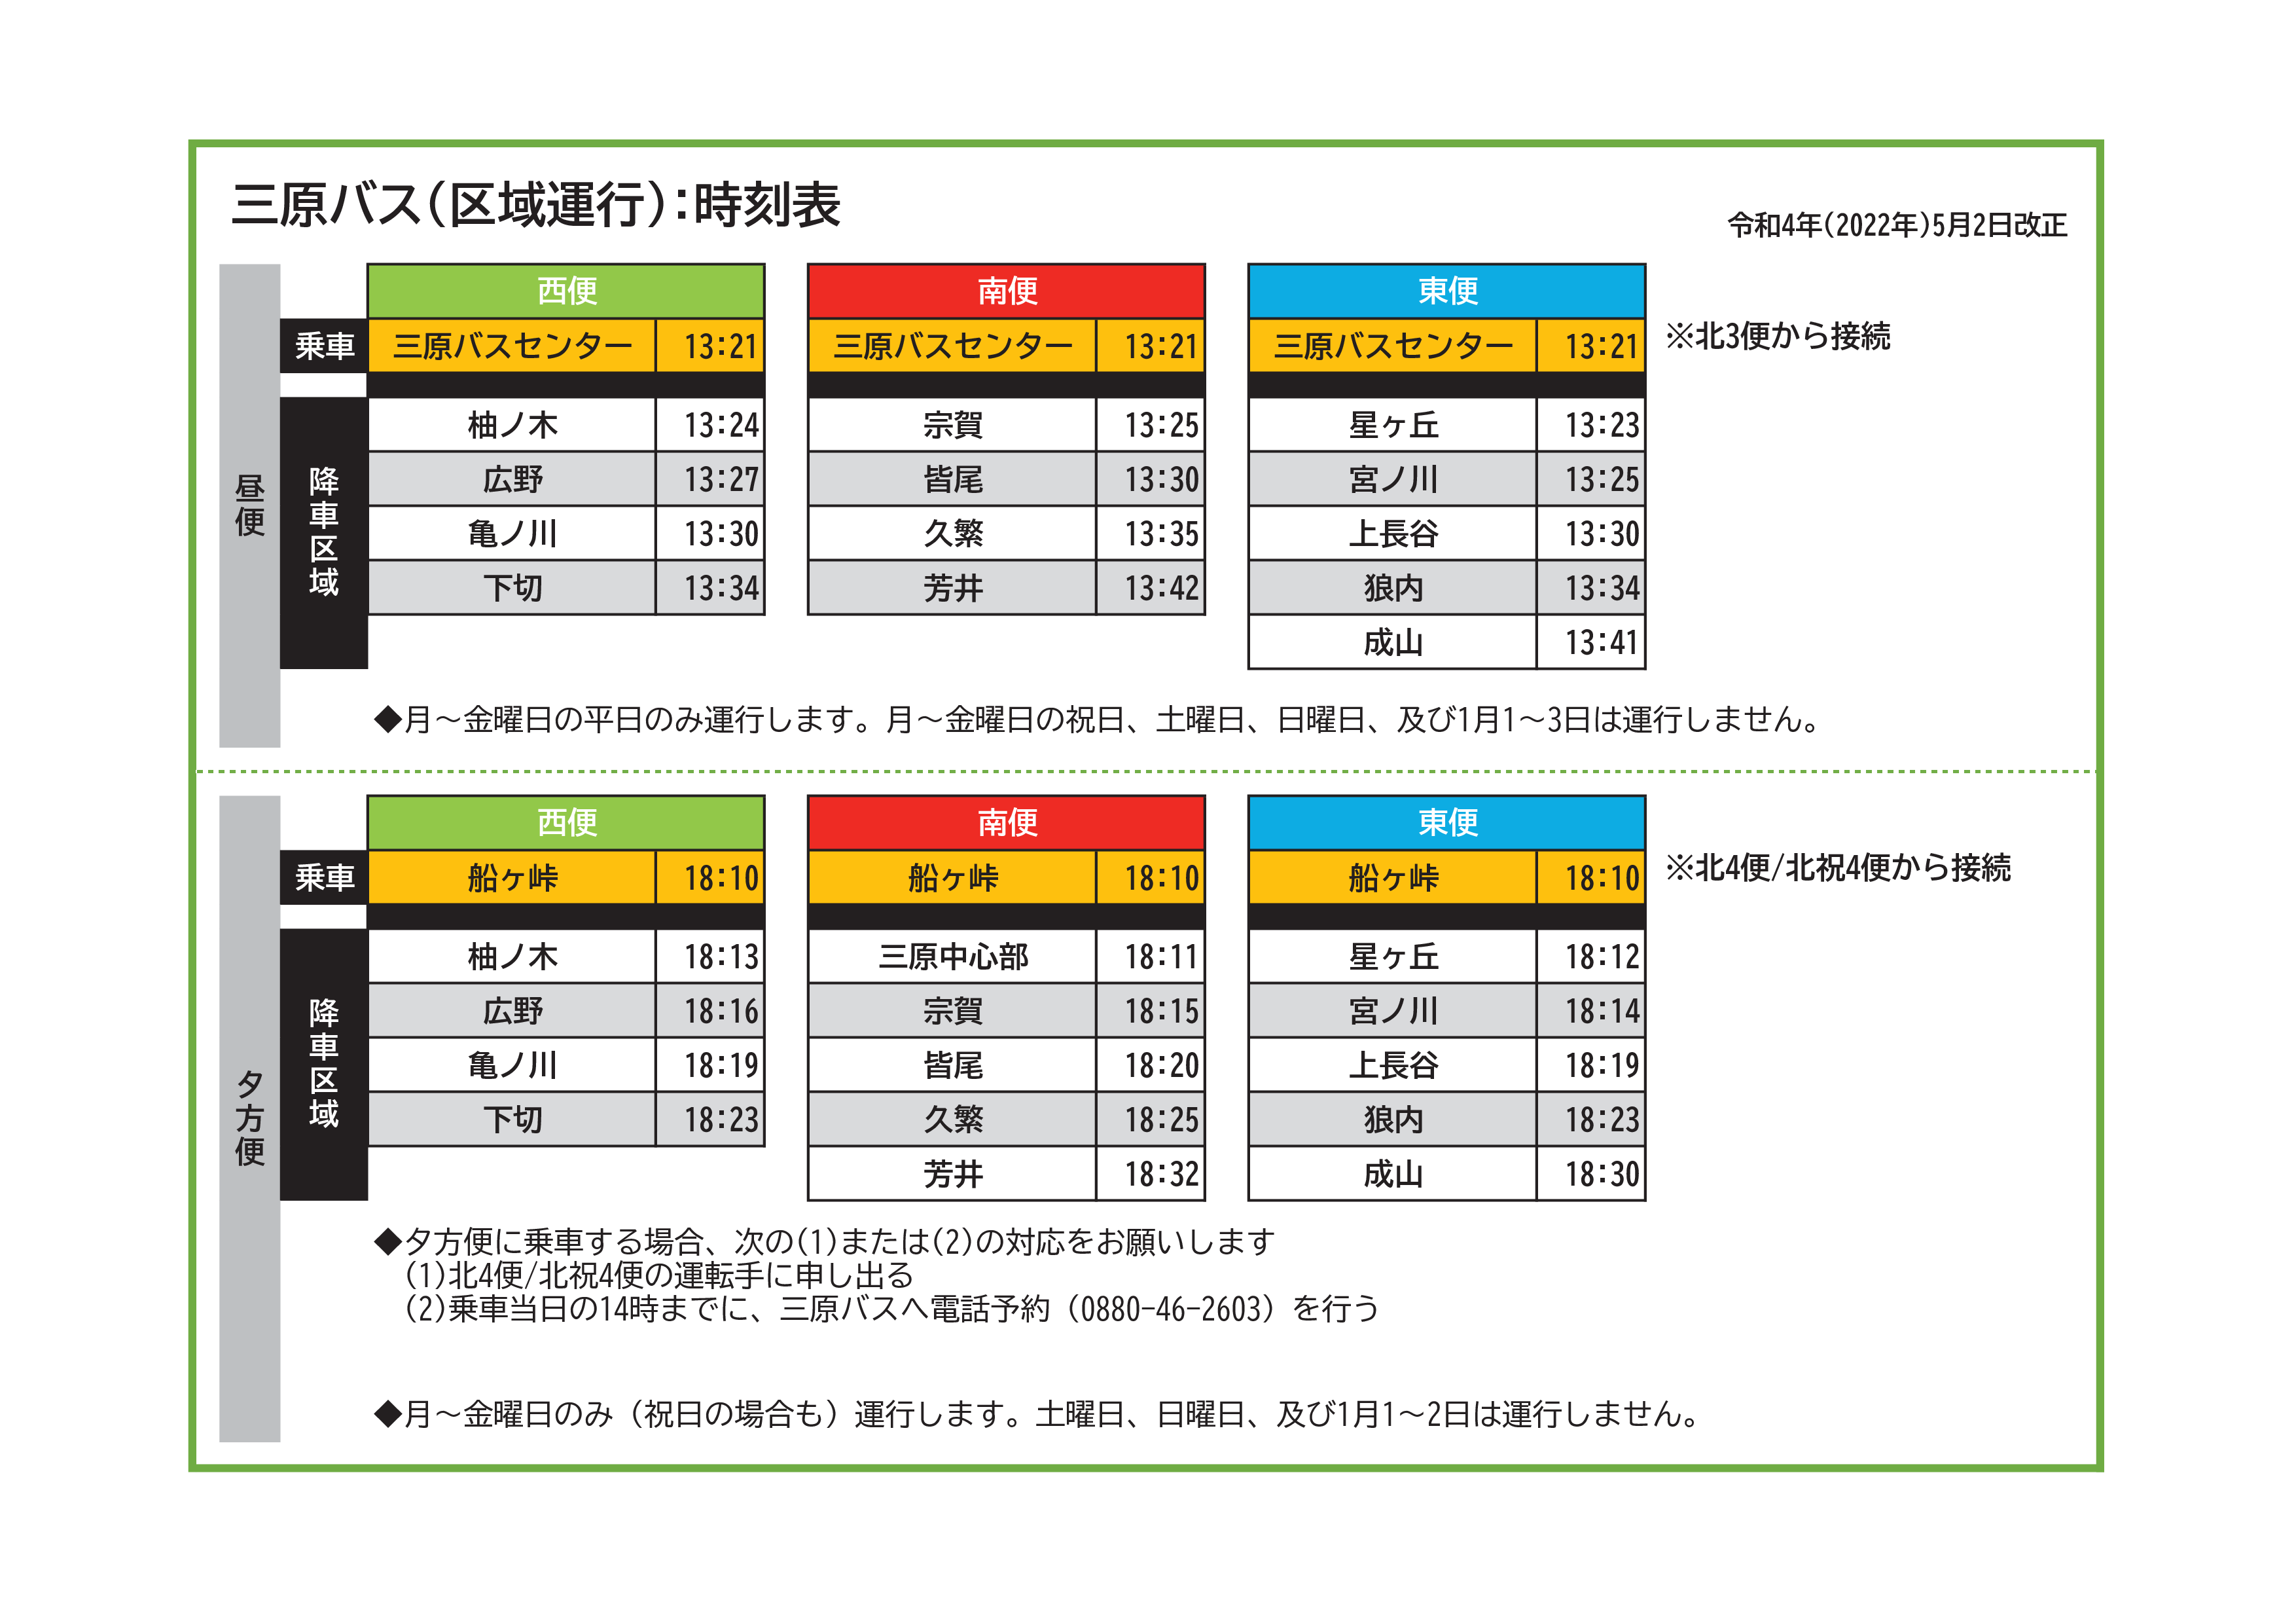 三原村バス区域運行時刻表